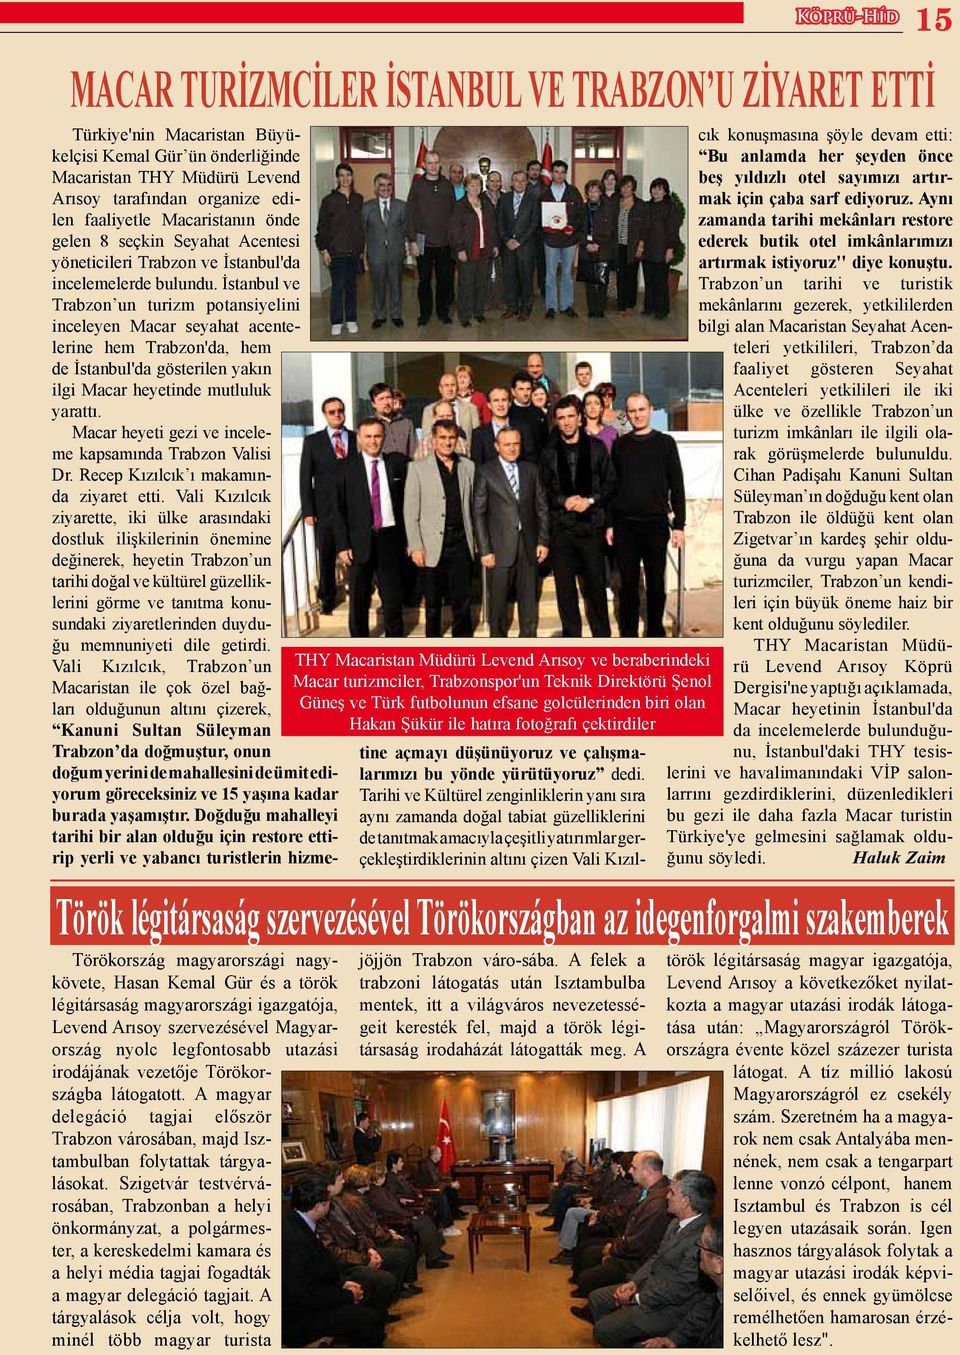 A magyar delegáció tagjai először Trabzon városában, majd Isztambulban folytattak tárgyalásokat.